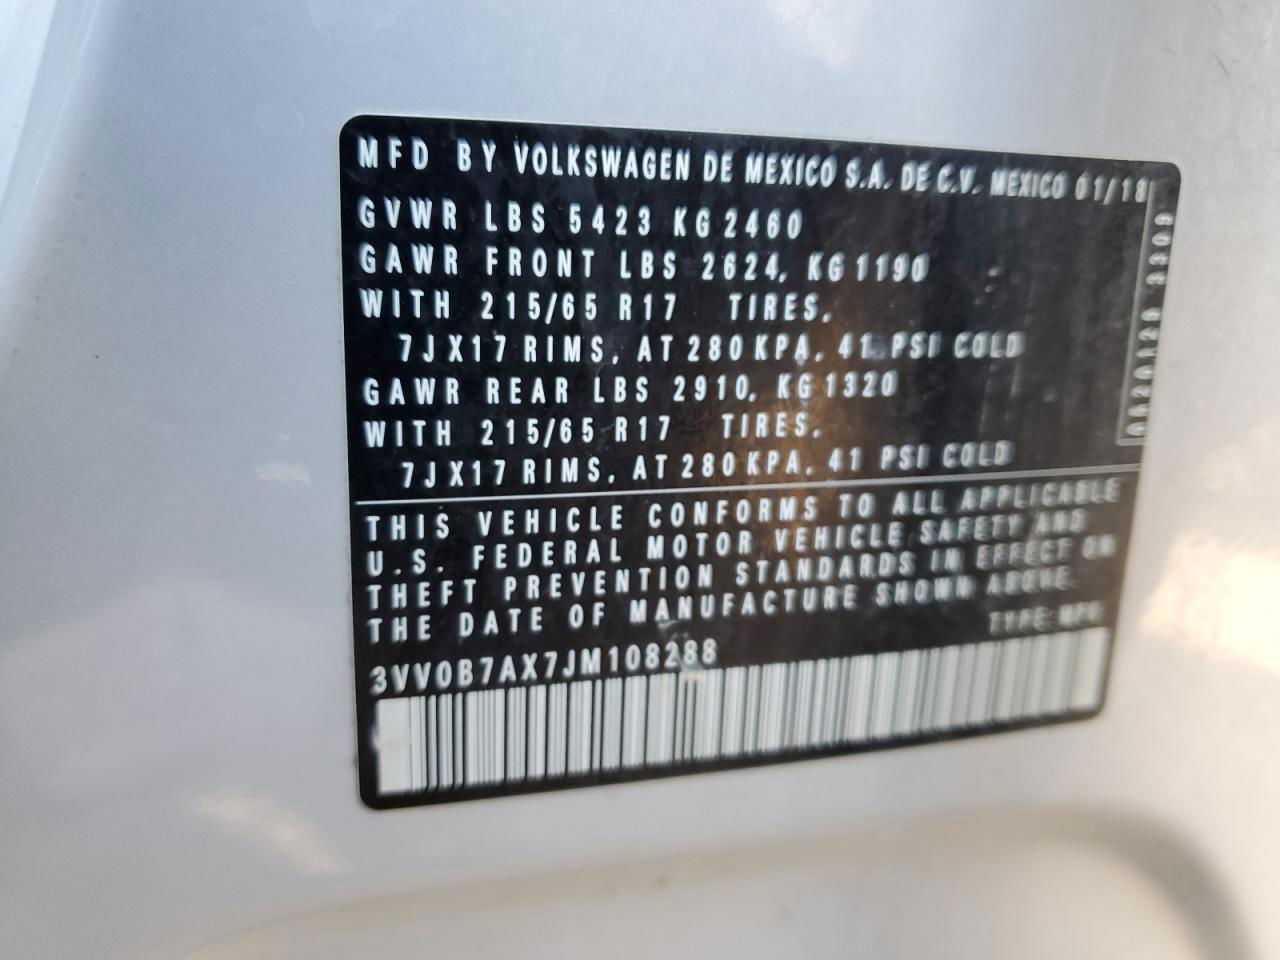 2018 Volkswagen Tiguan S Gray vin: 3VV0B7AX7JM108288